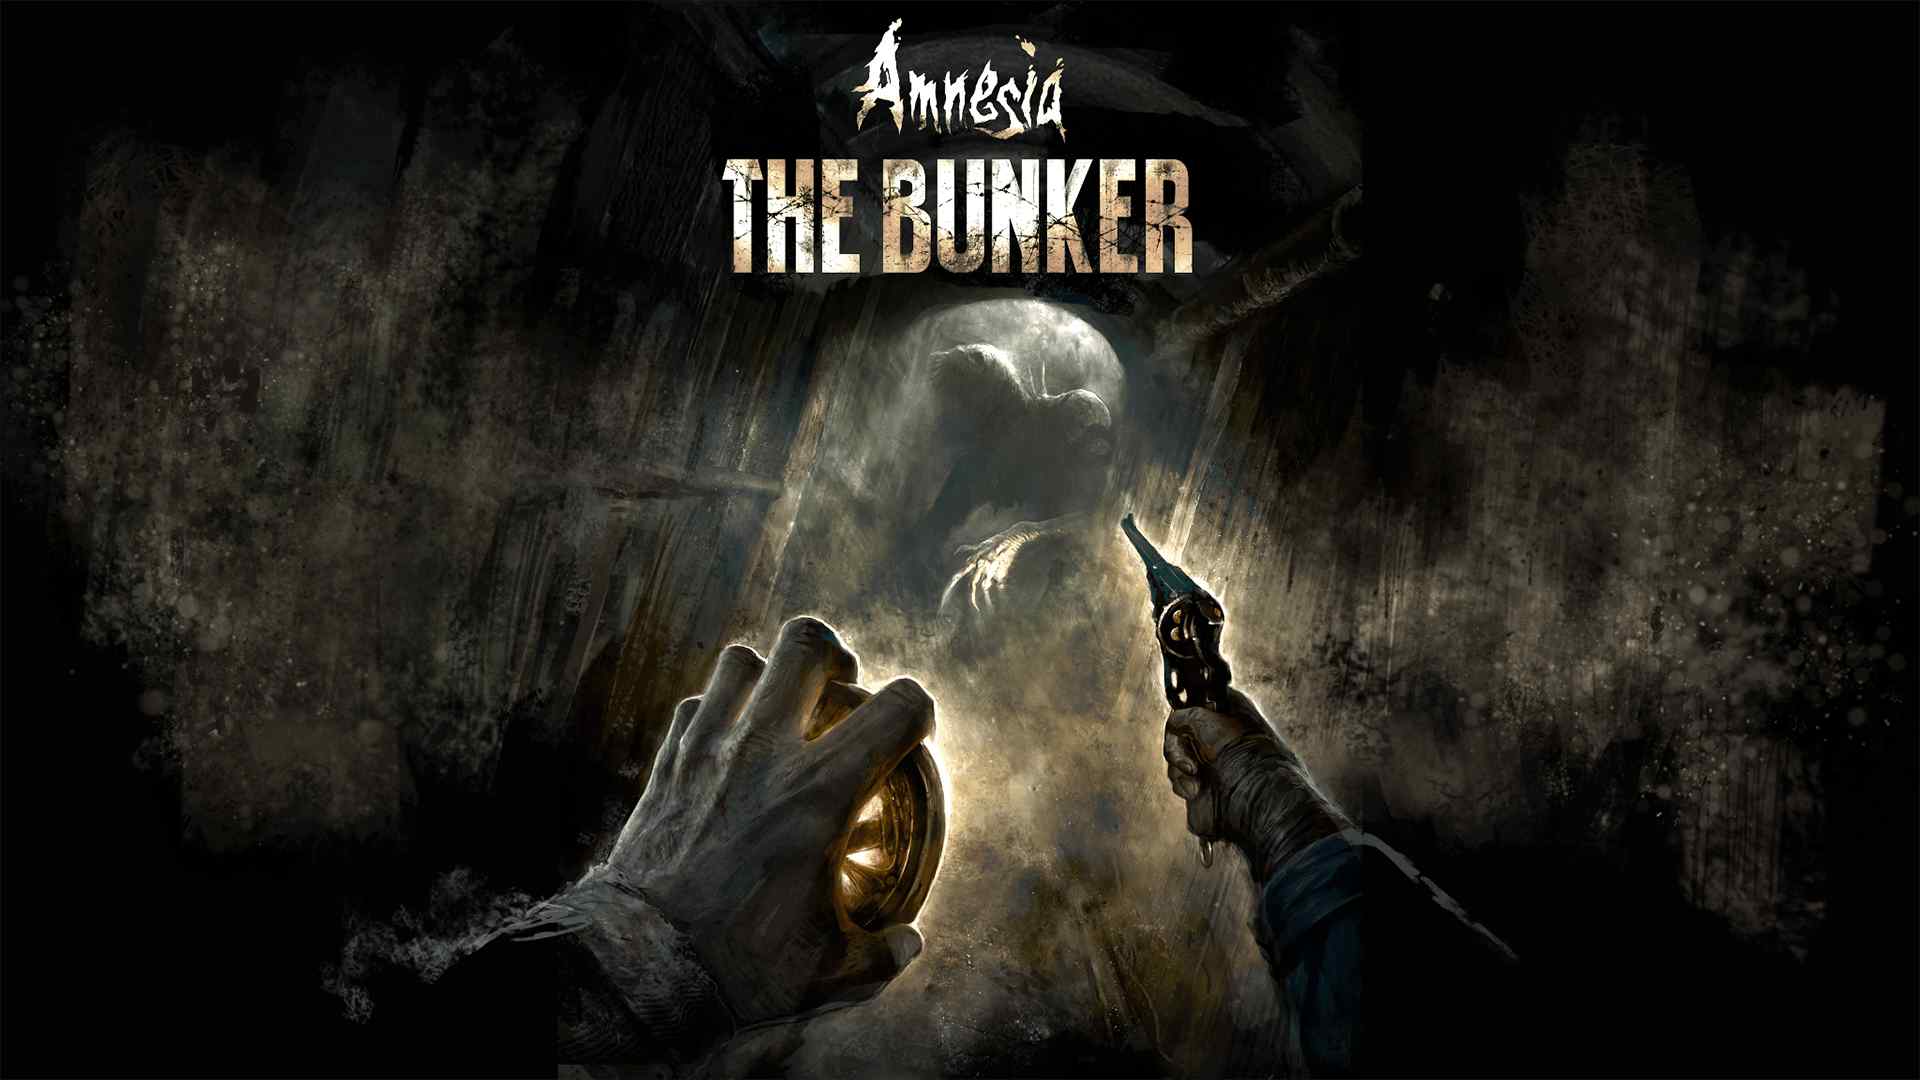 Un nouveau correctif a été publié pour le jeu d'horreur et de survie Amnesia : The Bunker, qui ajoute le sous-titrage, une fonction d'assistance à la visée et d'autres paramètres d'accessibilité.